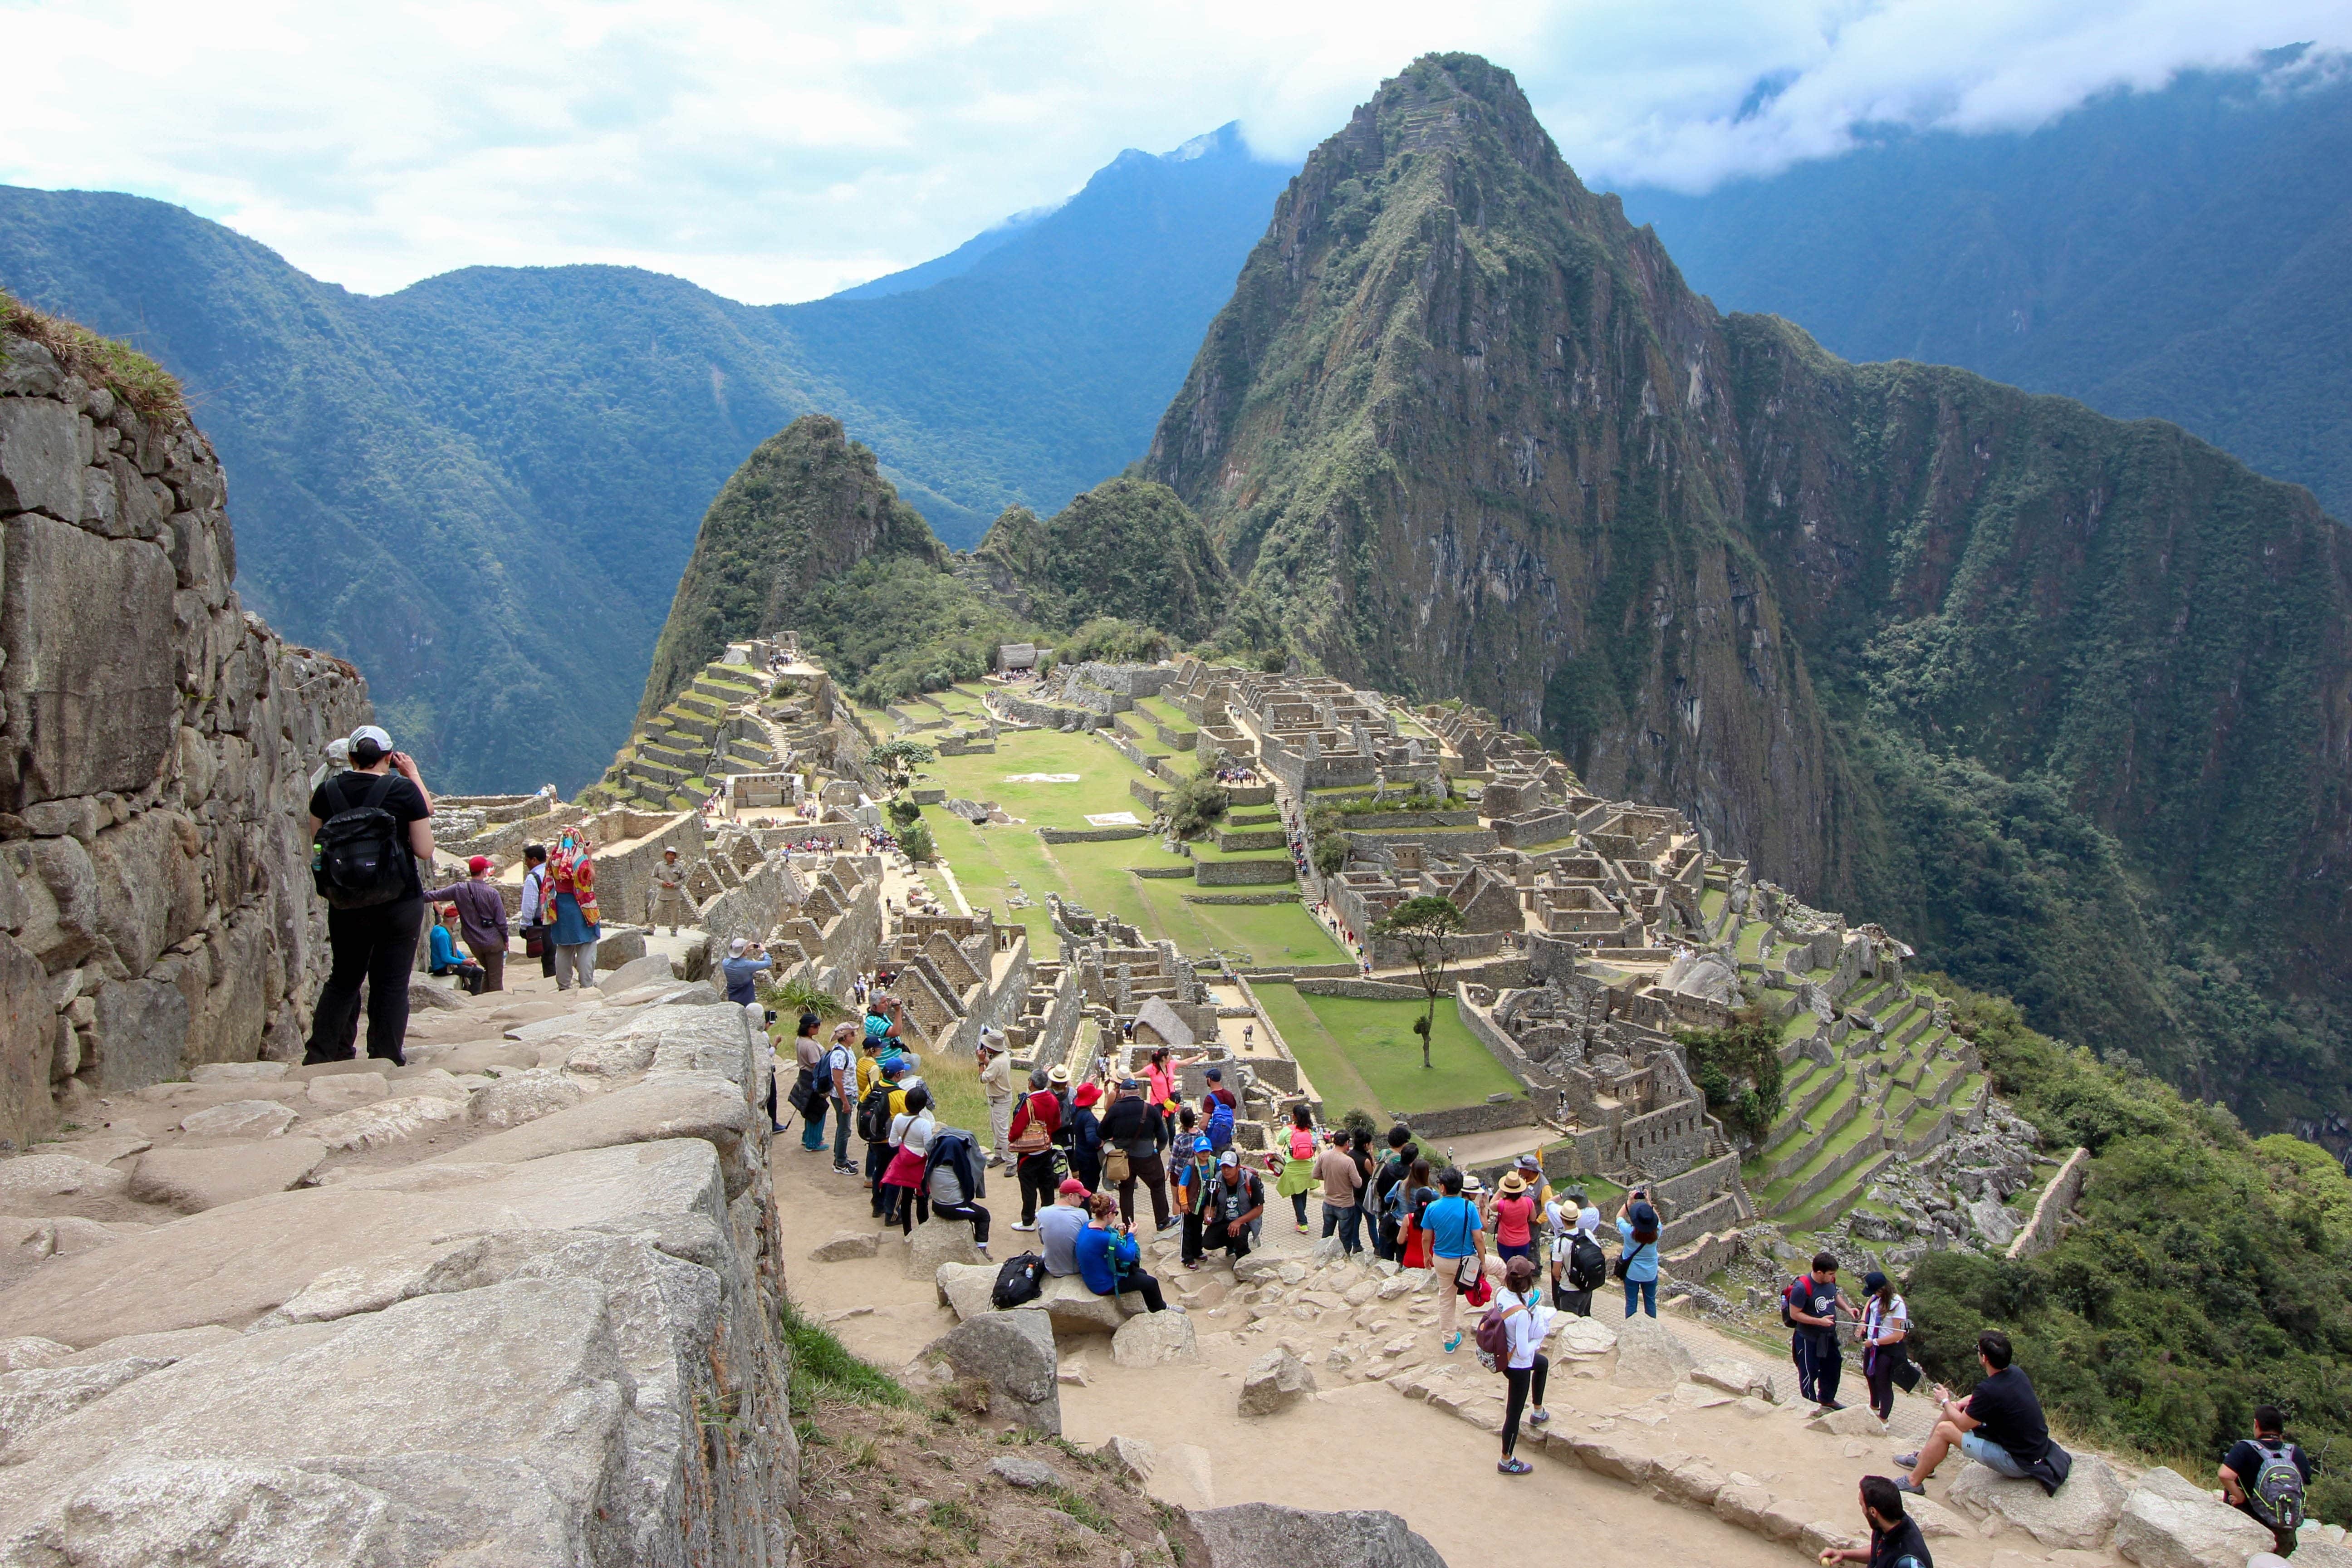 Many people hiking Machu Picchu